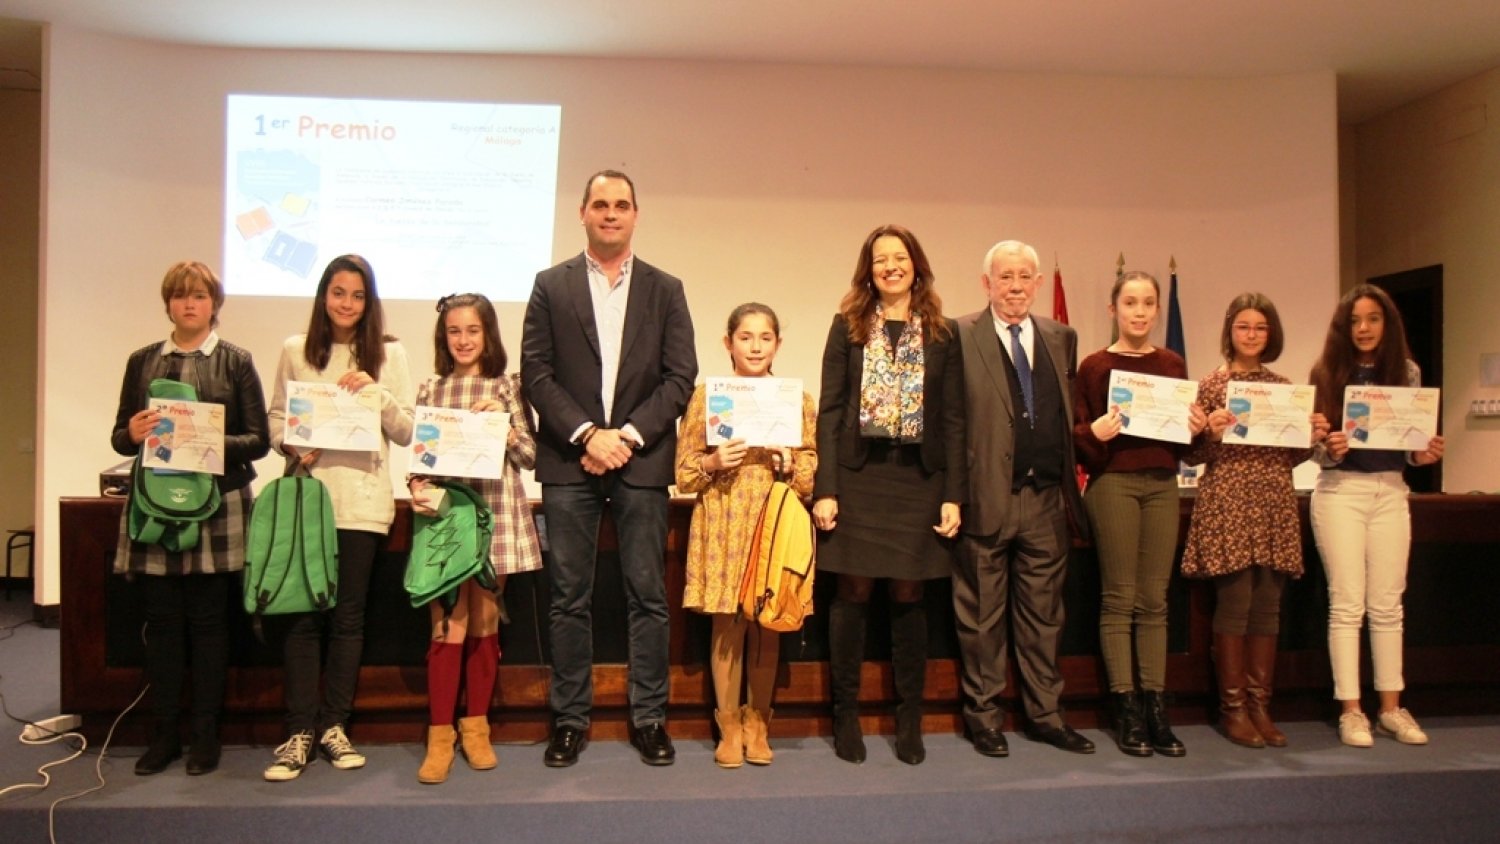 Una alumna de Villanueva de la Concepción gana el certamen literario “Solidaridad en letras”